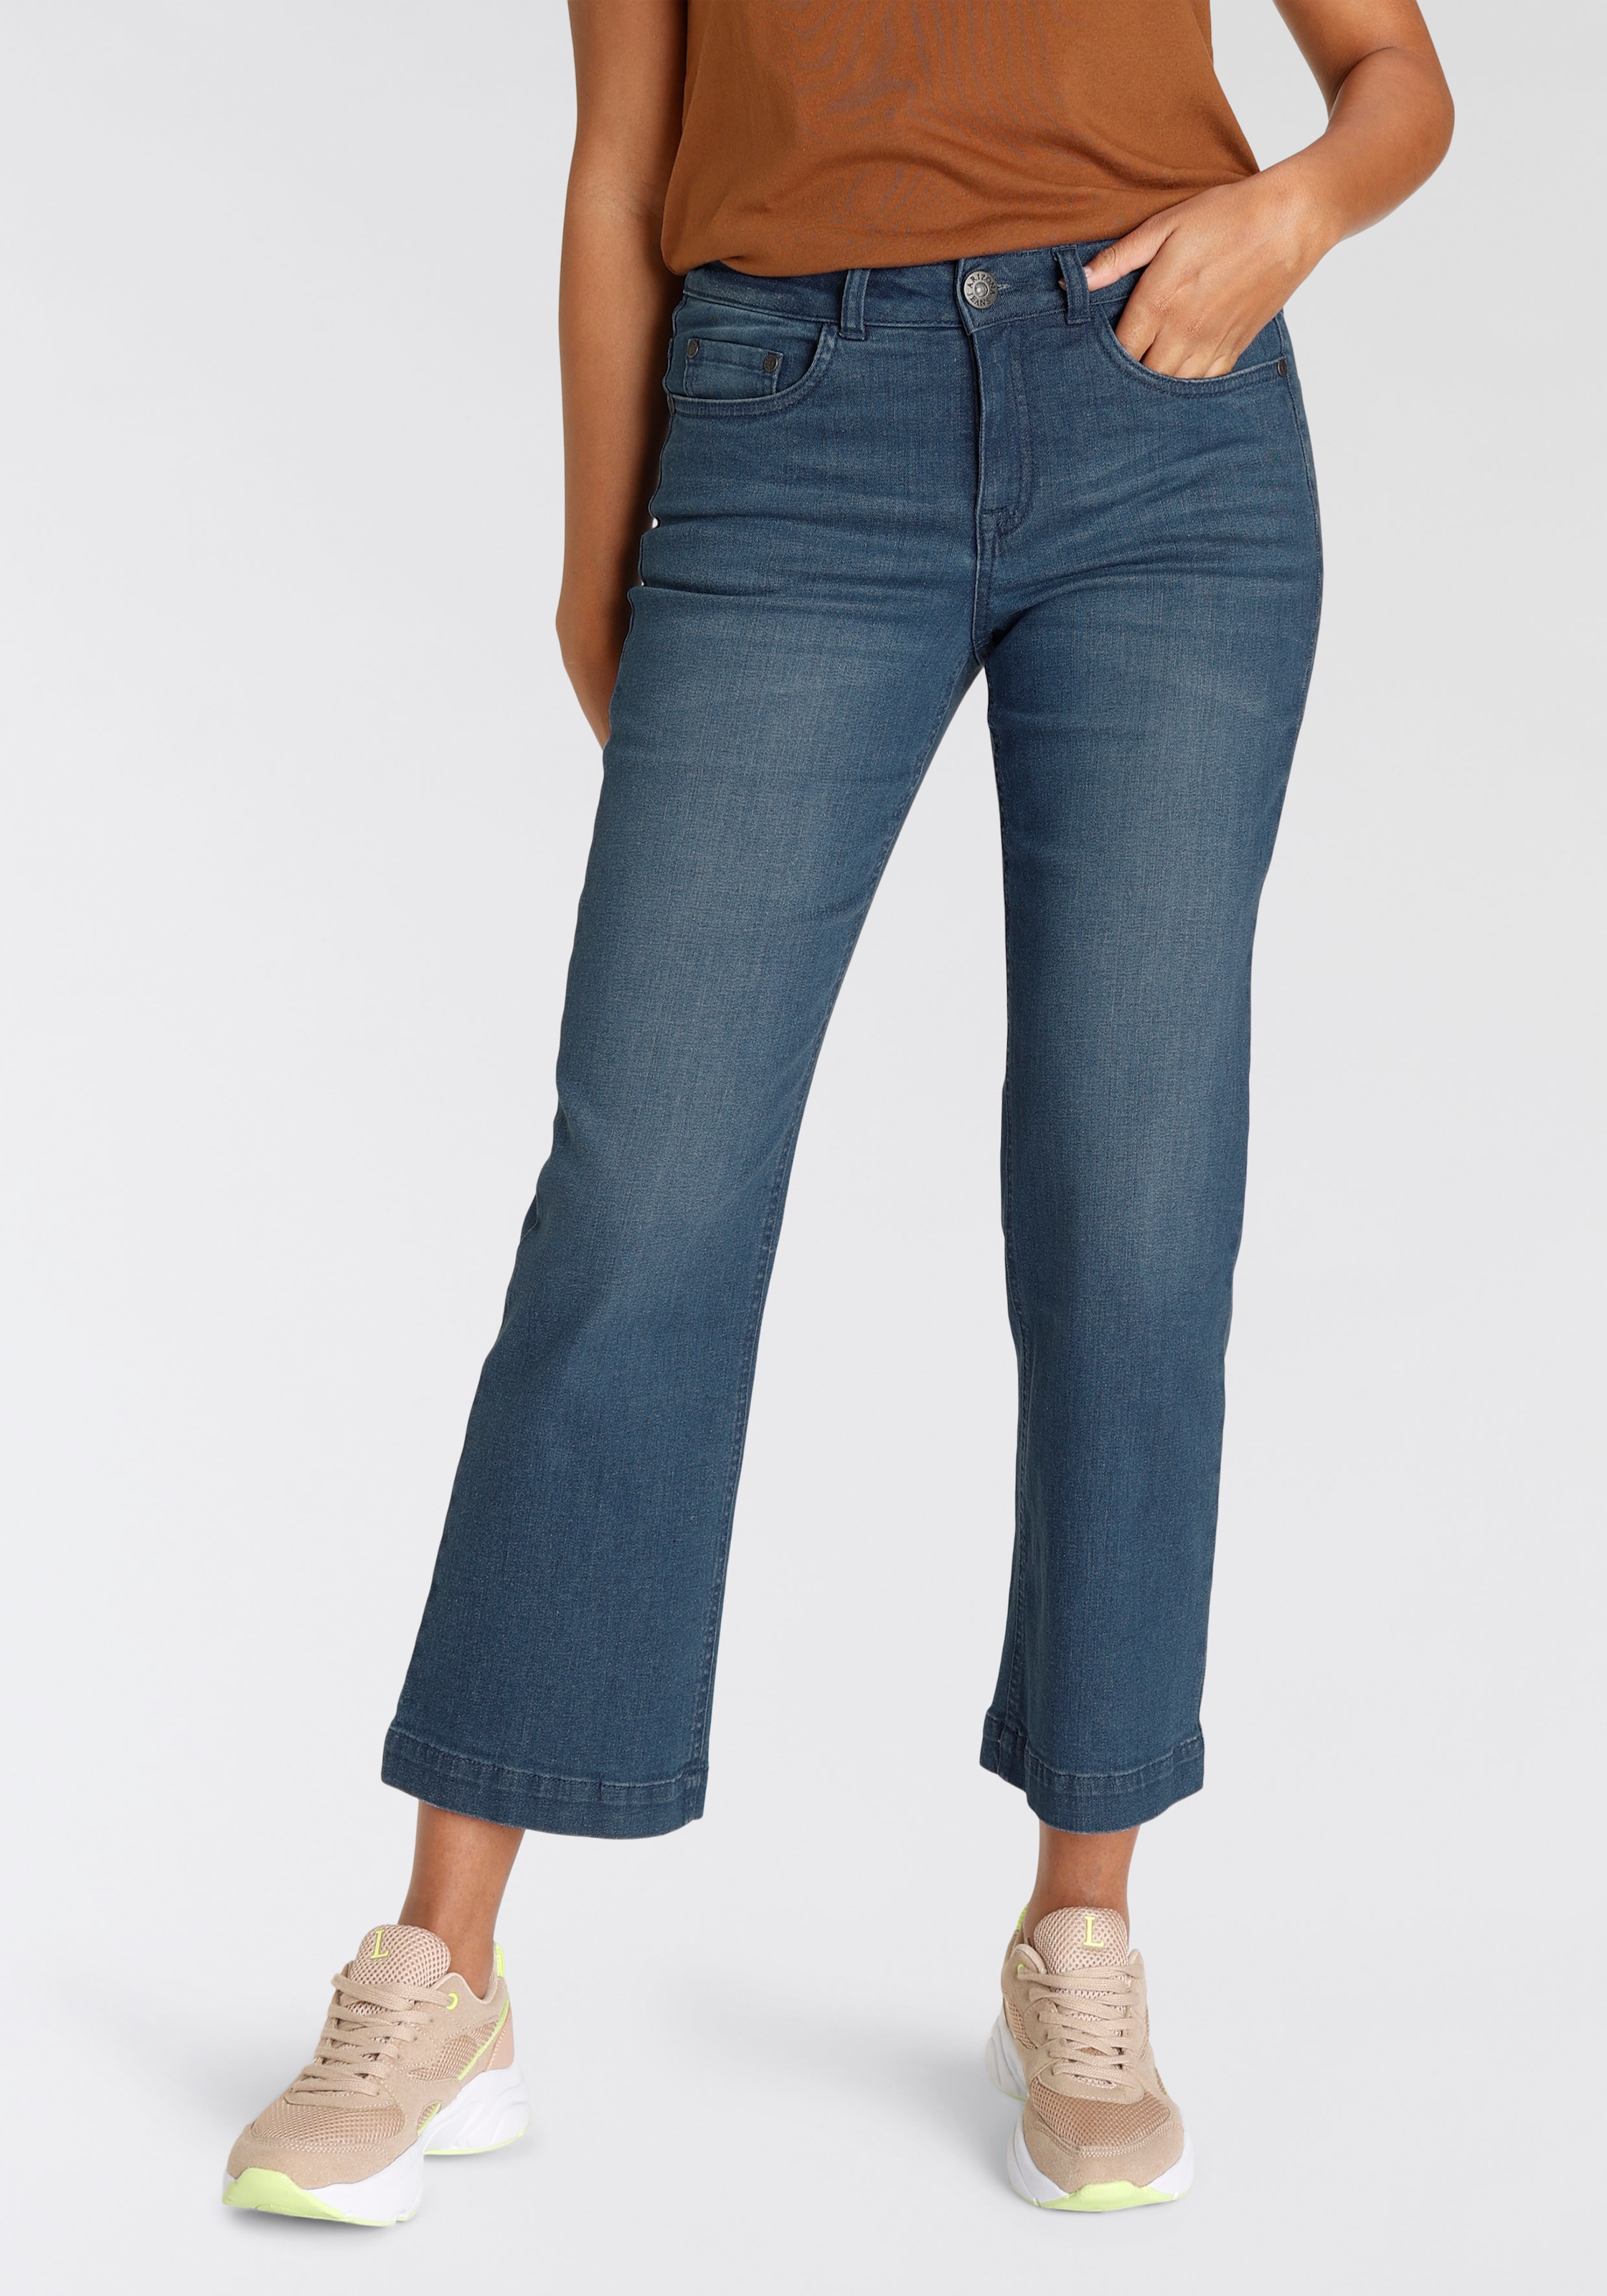 Weite kaufen online High Arizona Jeans, Waist